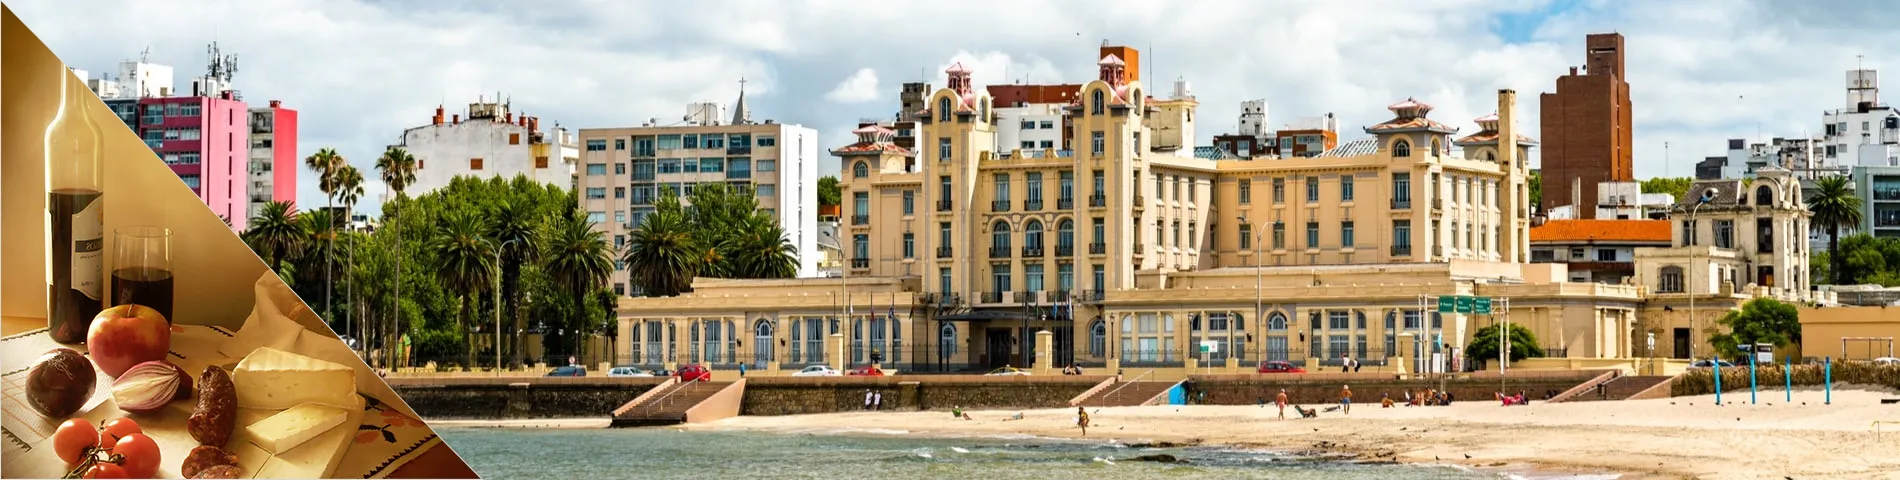 Montevideo - Spanska & kultur